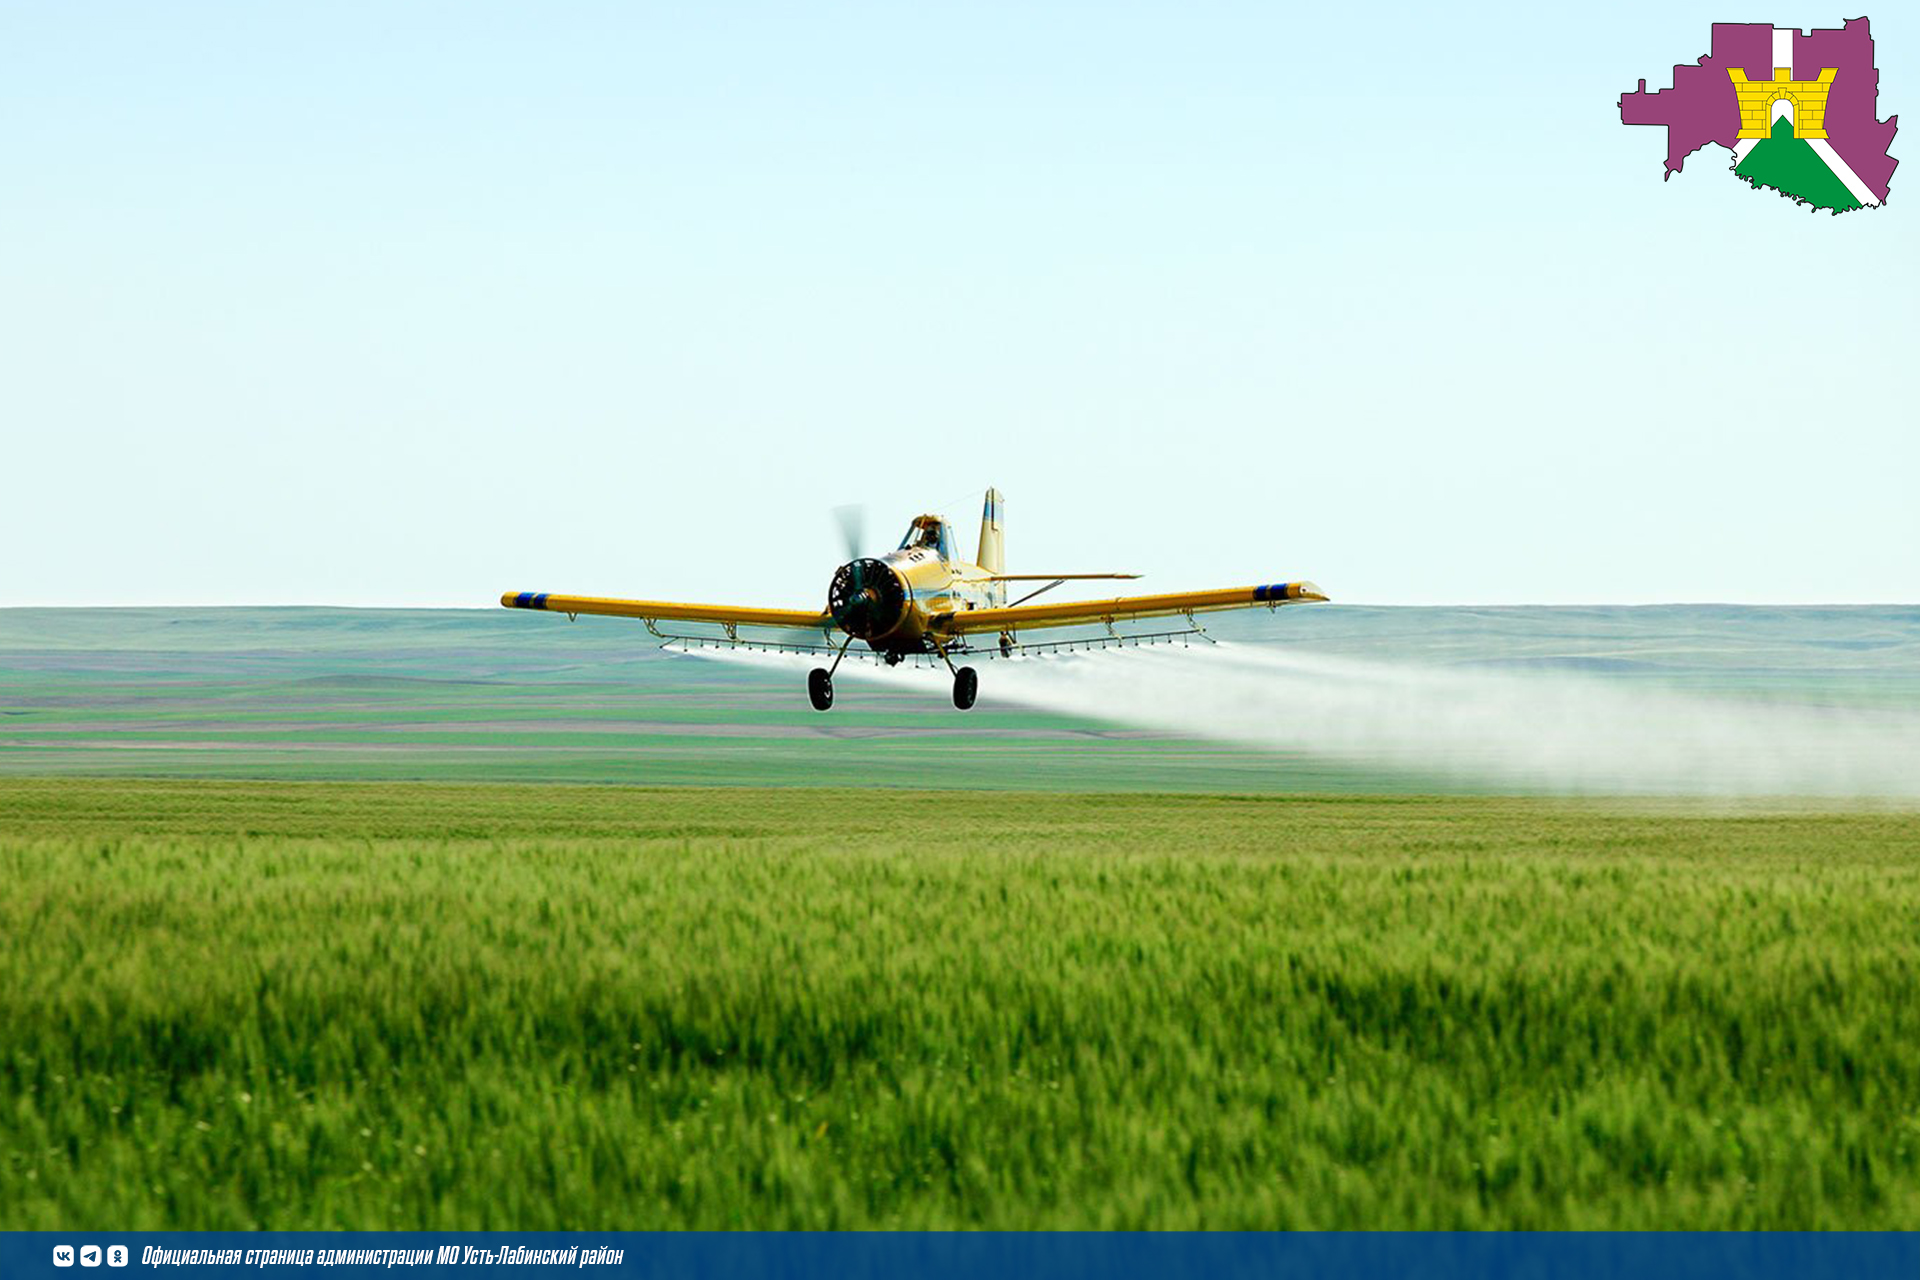 Россельхознадзор напоминает о важности и обязательности предварительного информирования о проведении обработки полей пестицидами и агрохимикатами